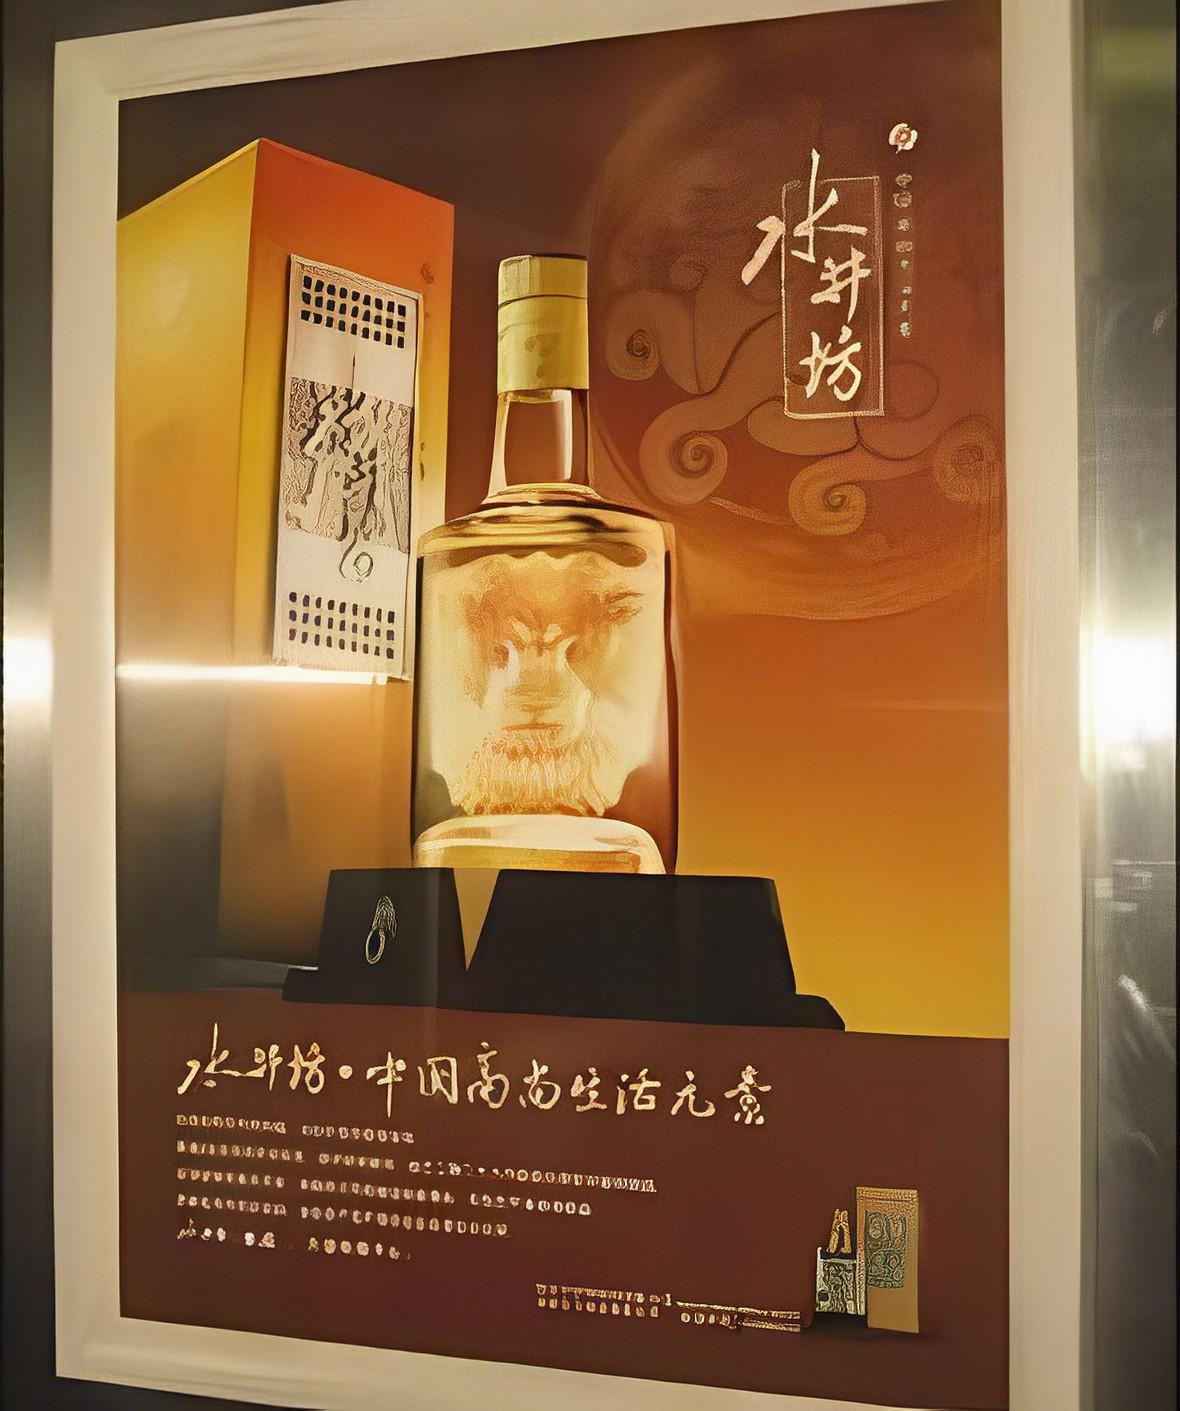 杭州电梯广告